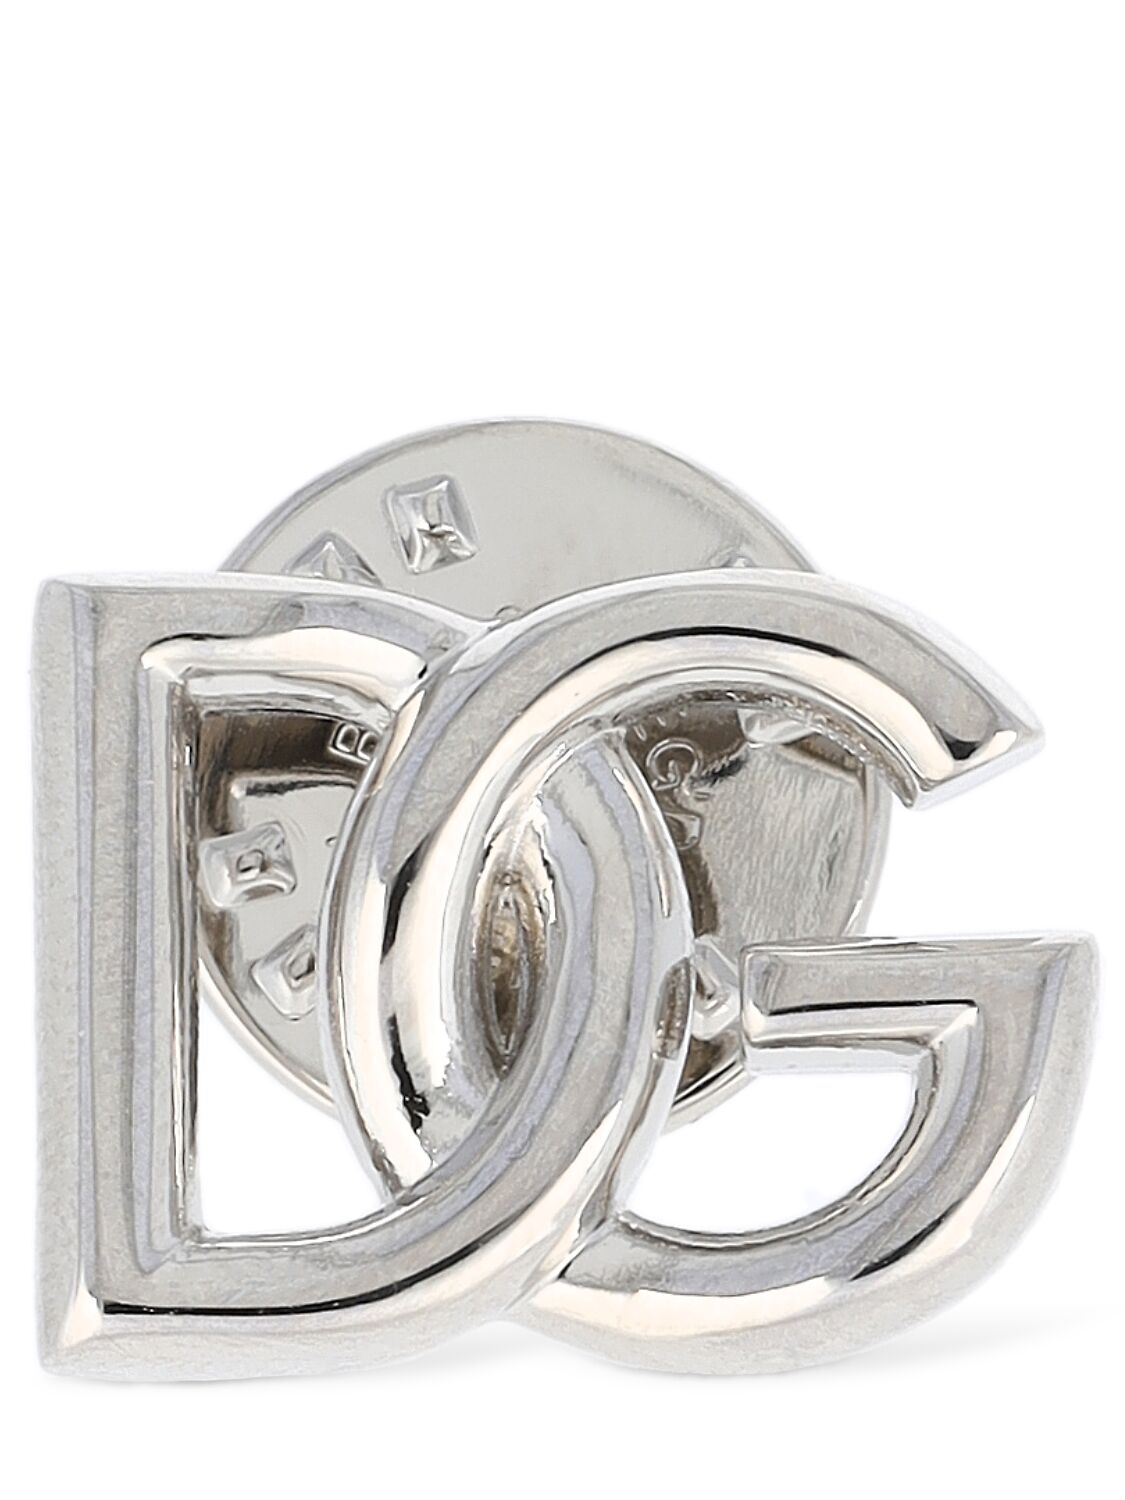 Image of Dg Logo Brooch